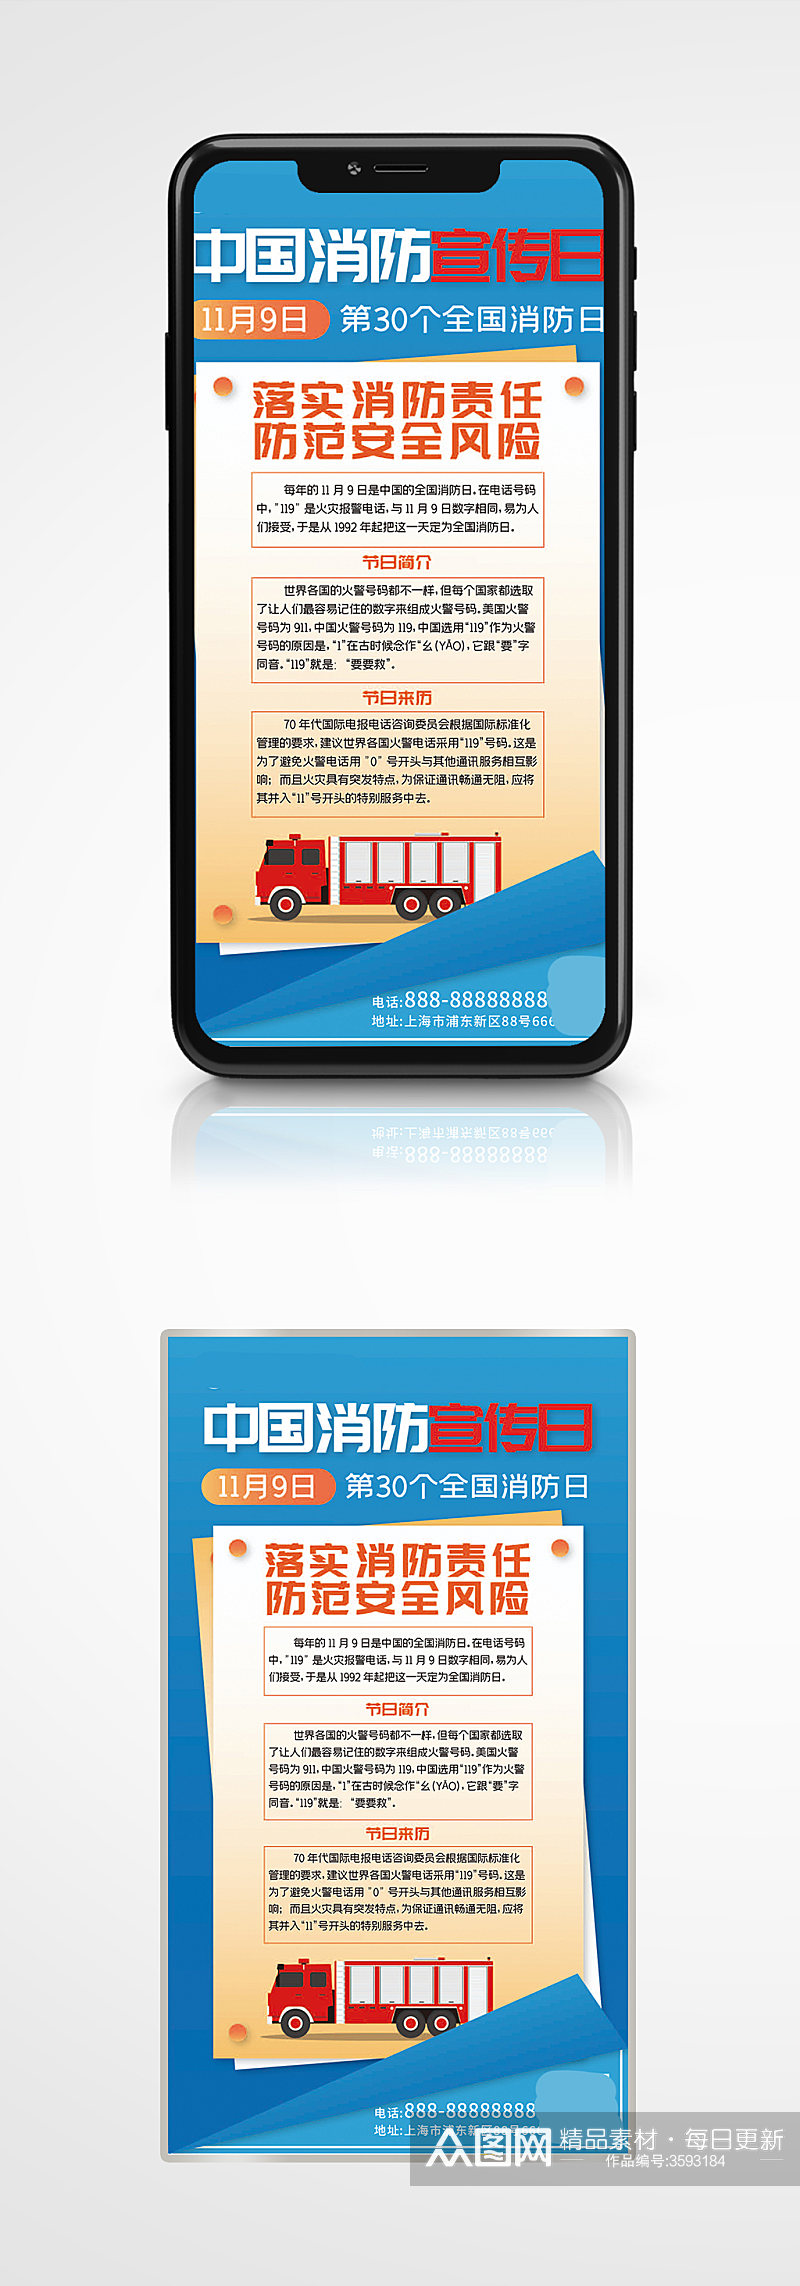 中国消防宣传日手机海报119知识素材